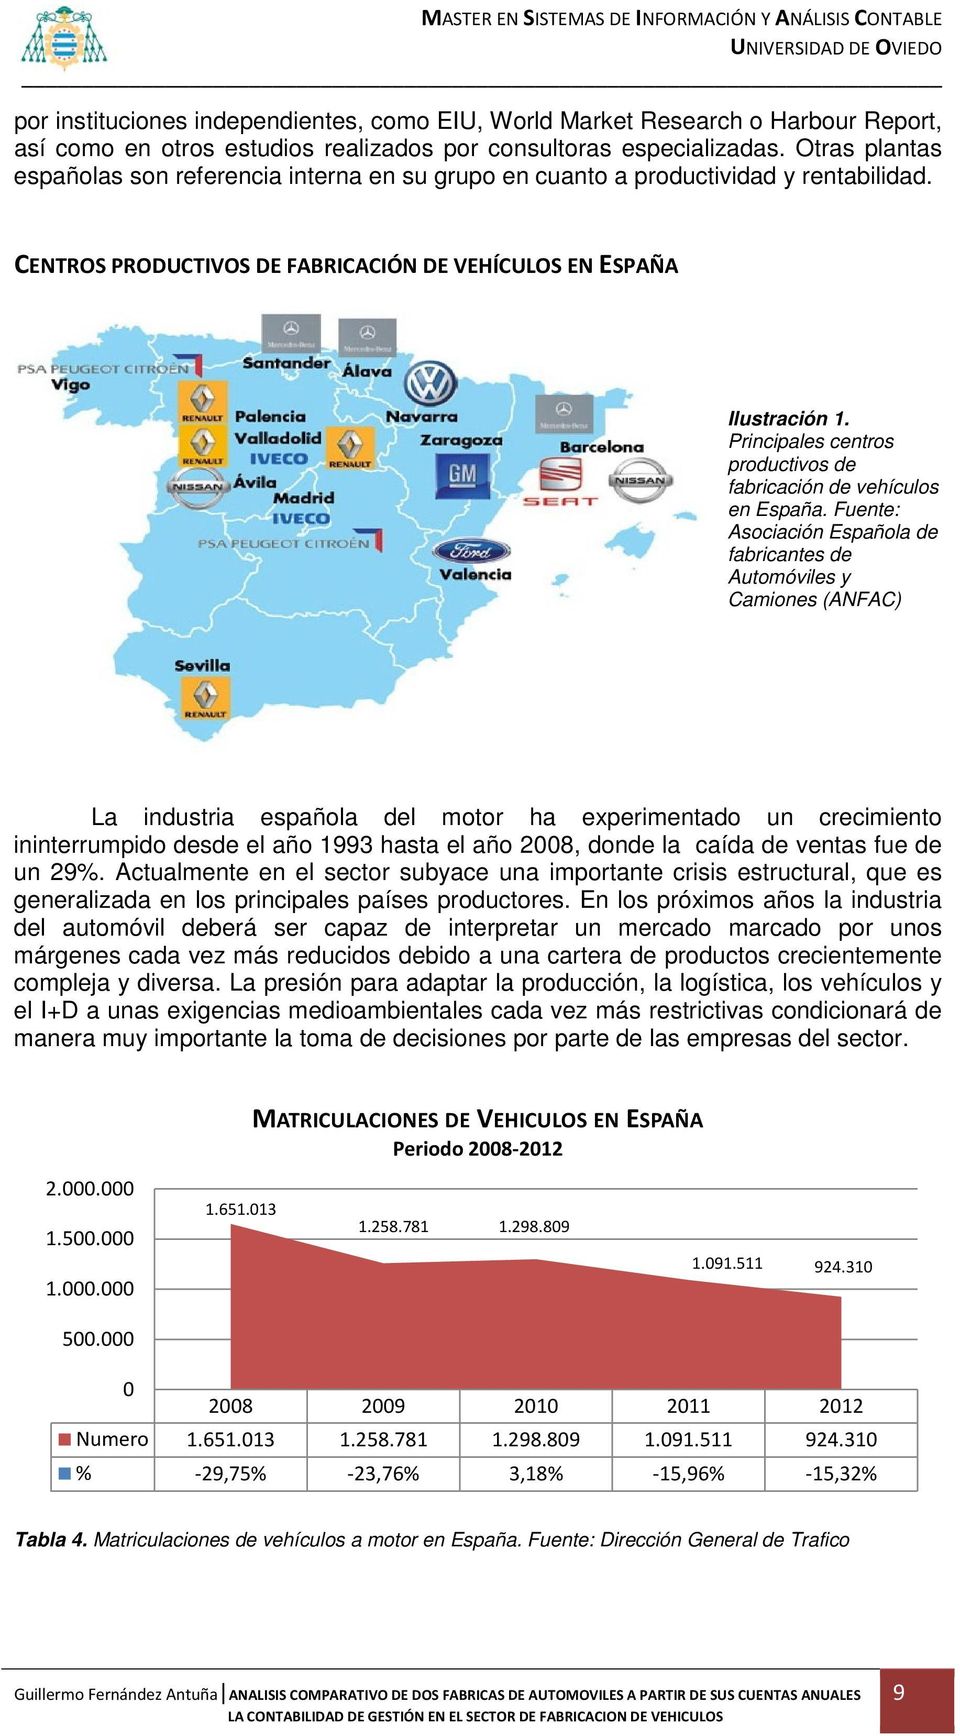 Principales centros productivos de fabricación de vehículos en España.